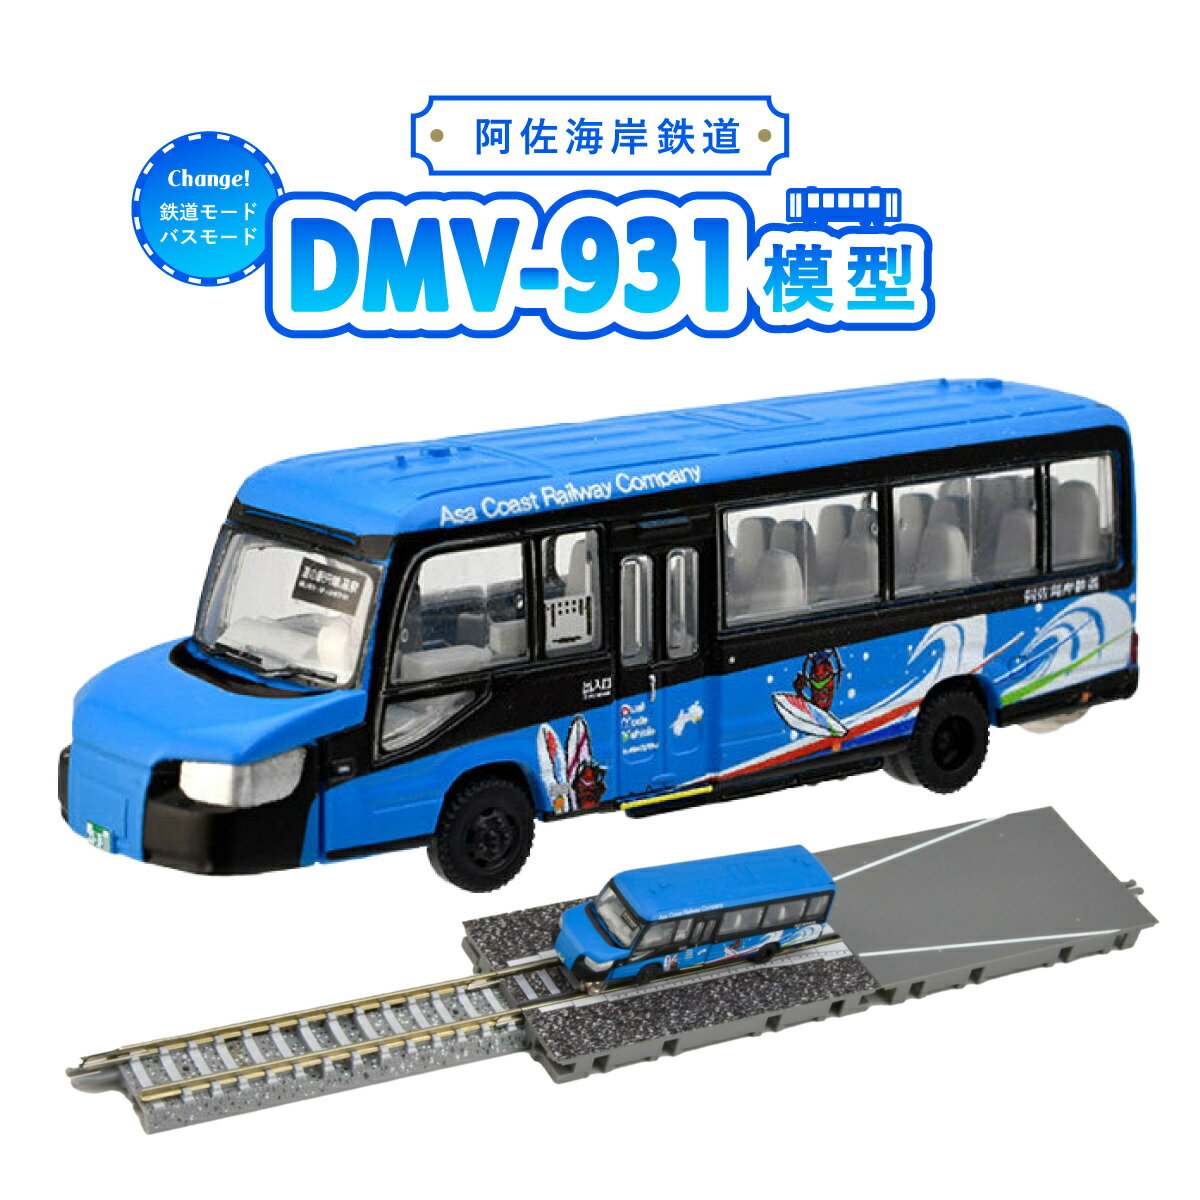 DMV 模型 DMV-931 阿佐海岸鉄道 デュアルモードビークル 未来への波乗り 世界初 のりもの 乗り物 鉄道 バス ジオコレ 鉄道コレクション バスコレクション